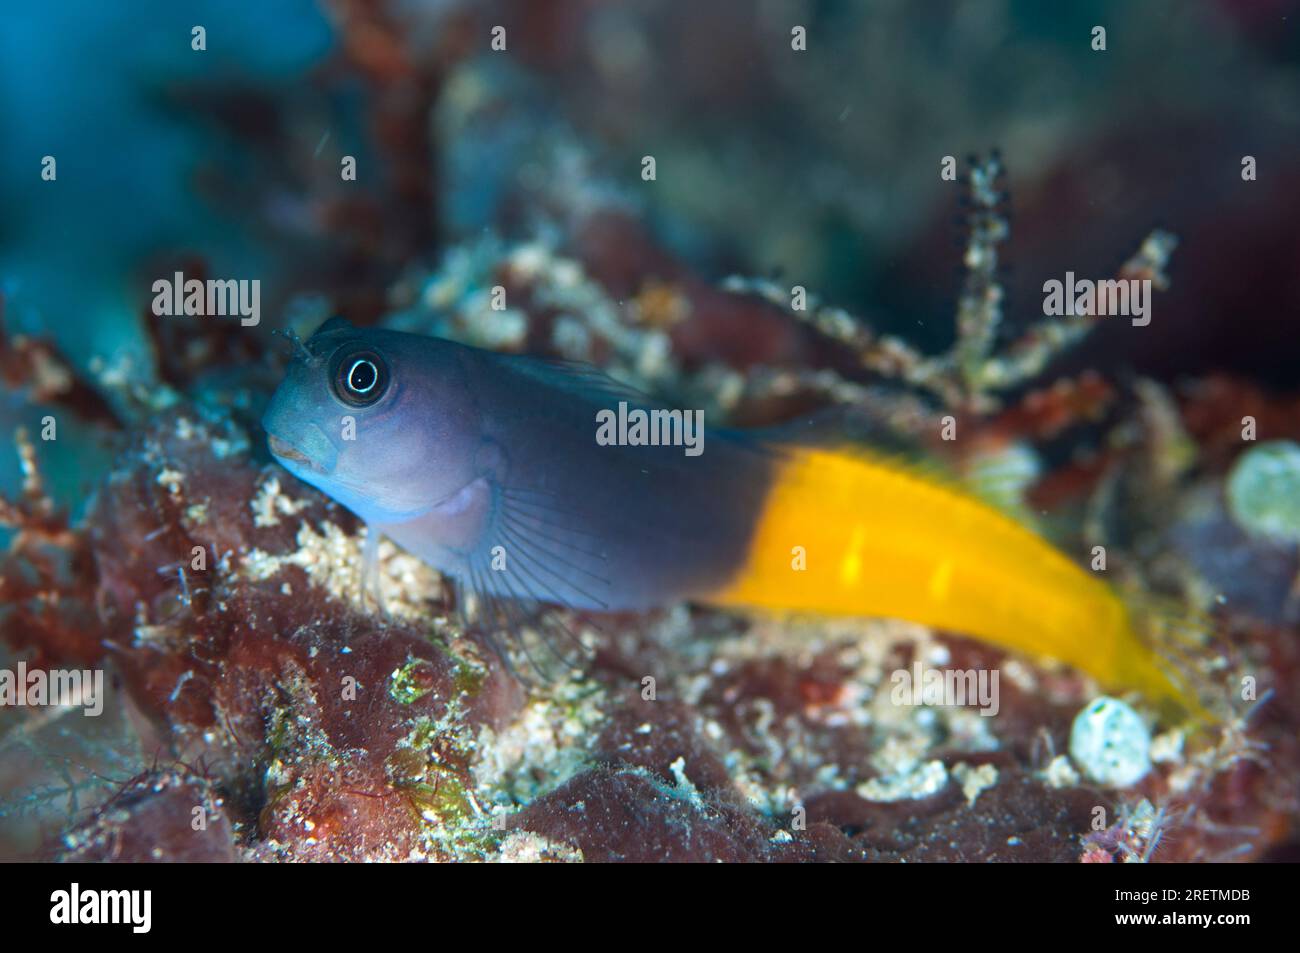 Bicolor Blenny, Escenius bicolor, Otdina Reef, Dampier Strait, Raja Ampat, West Papua, Indonesia Stock Photo